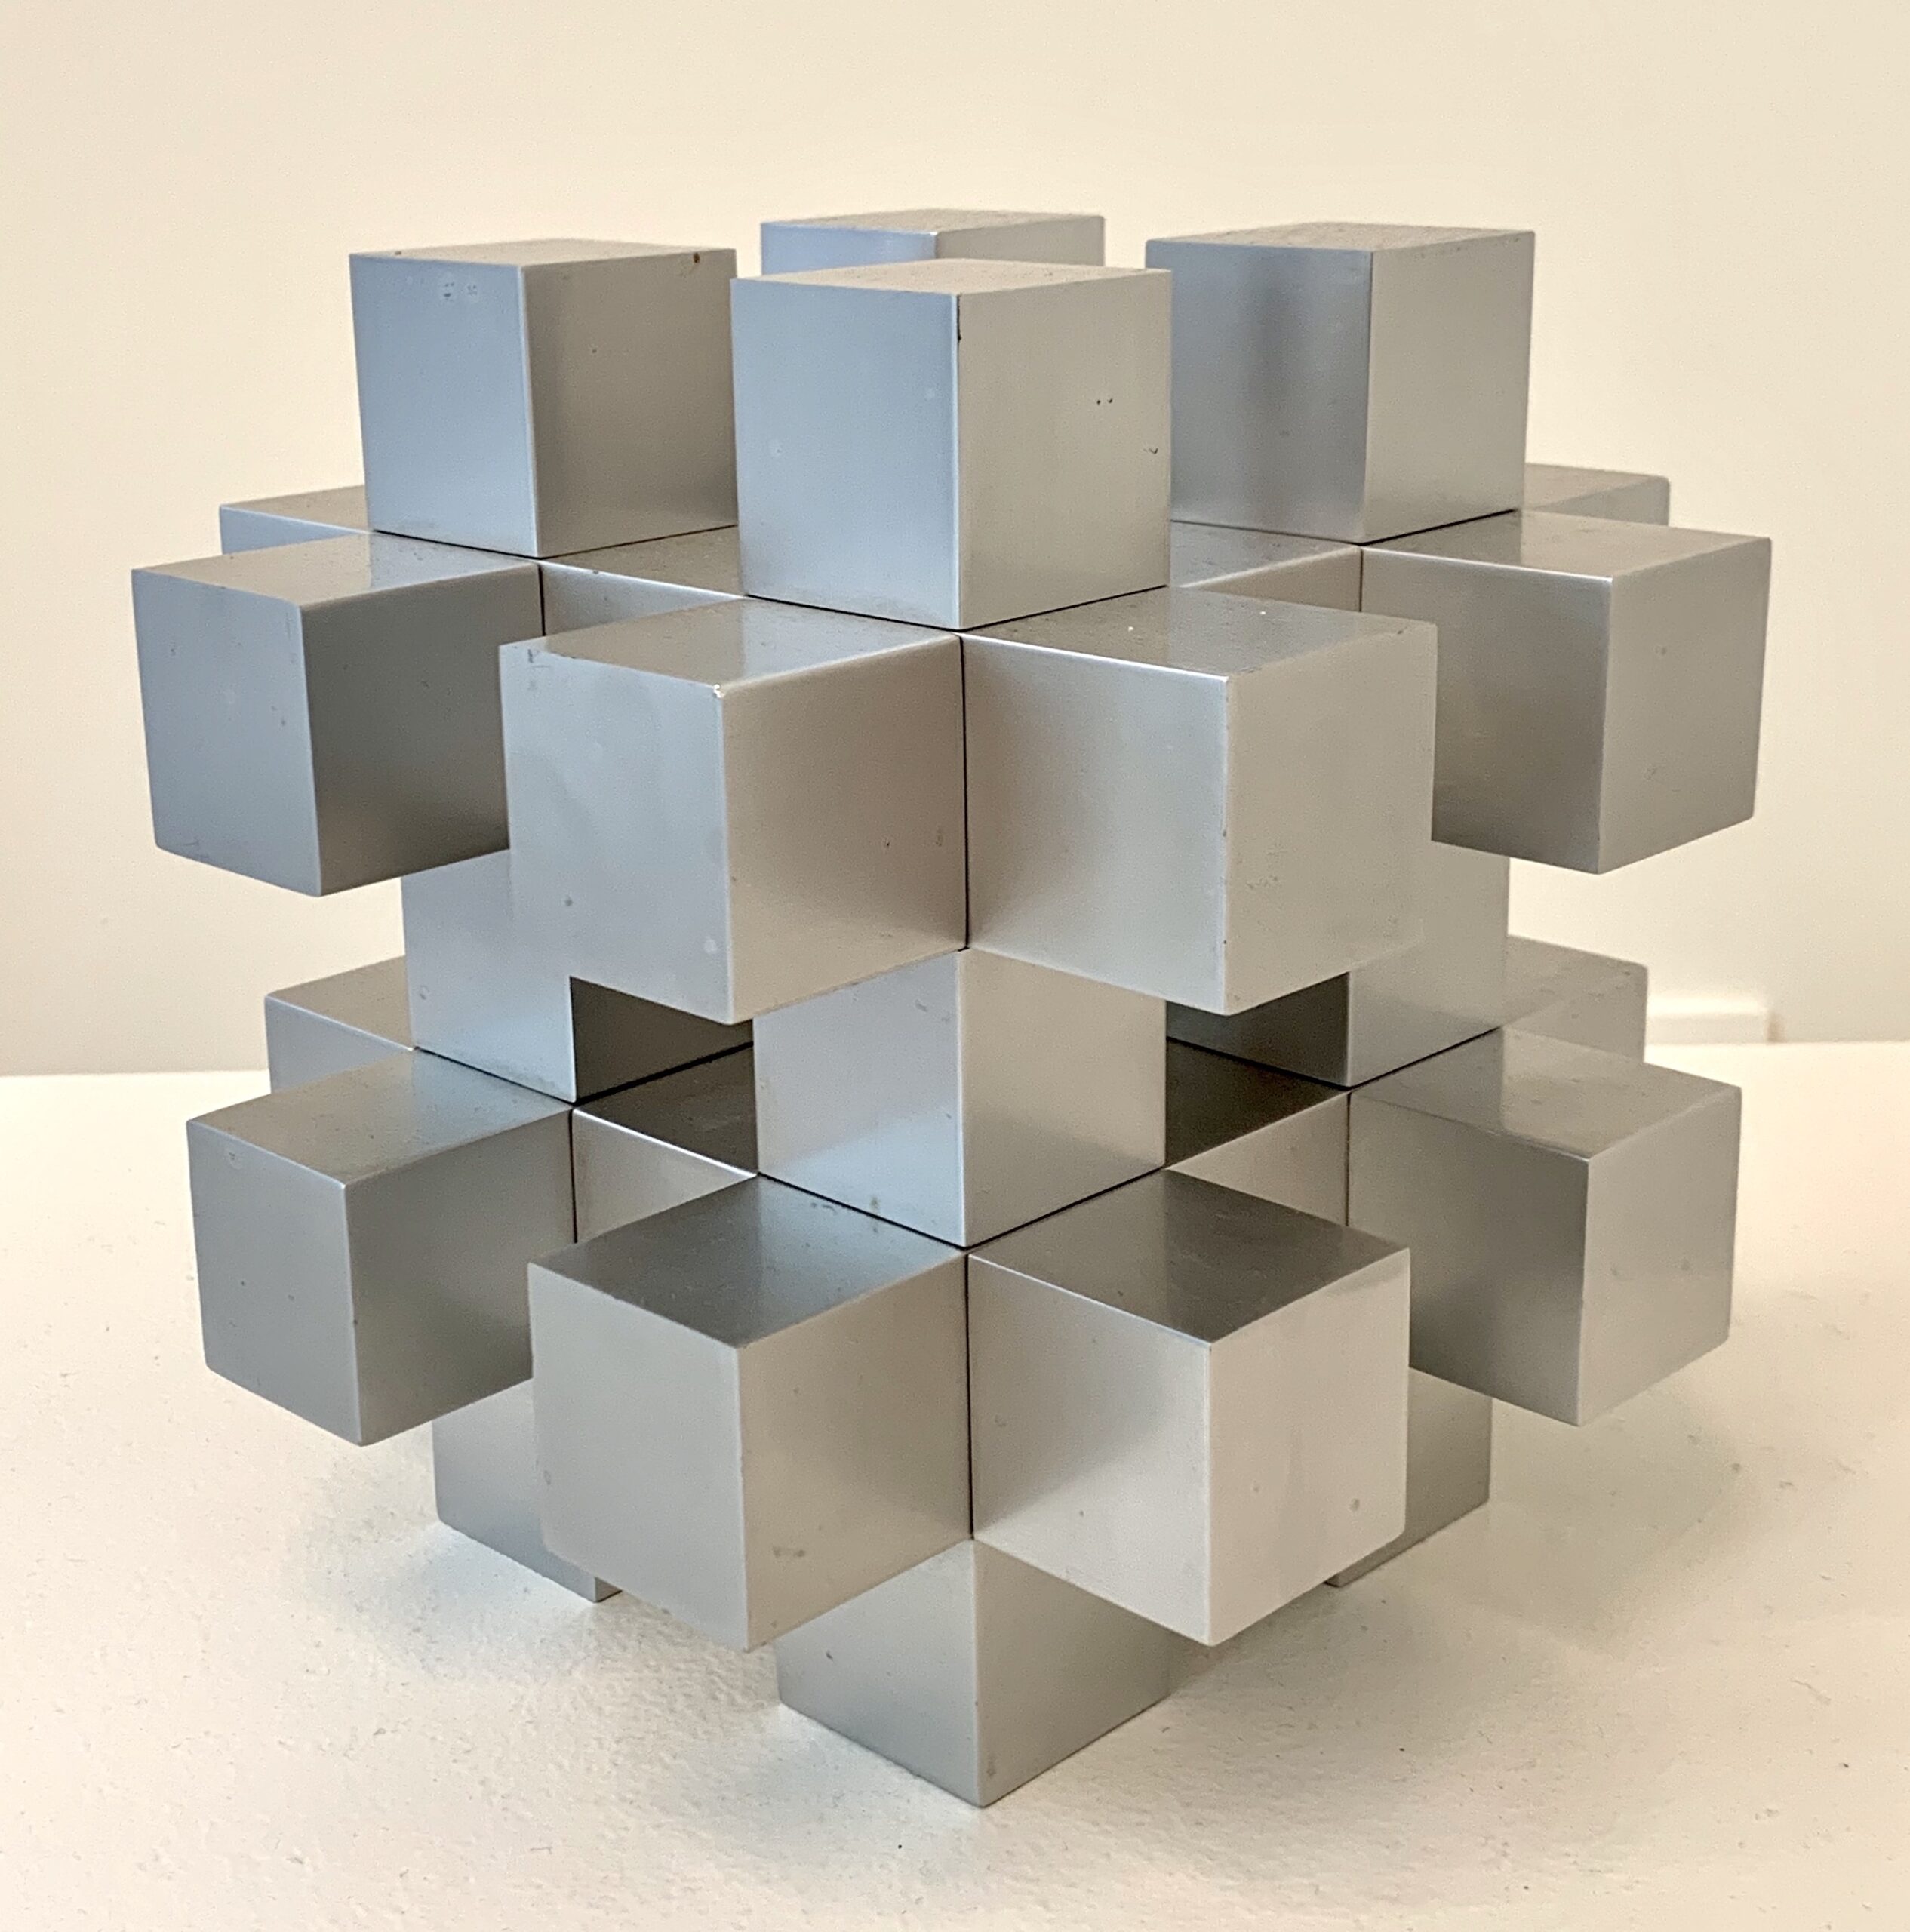 Ewerdt Hilgemann - Cube Structure, 1973